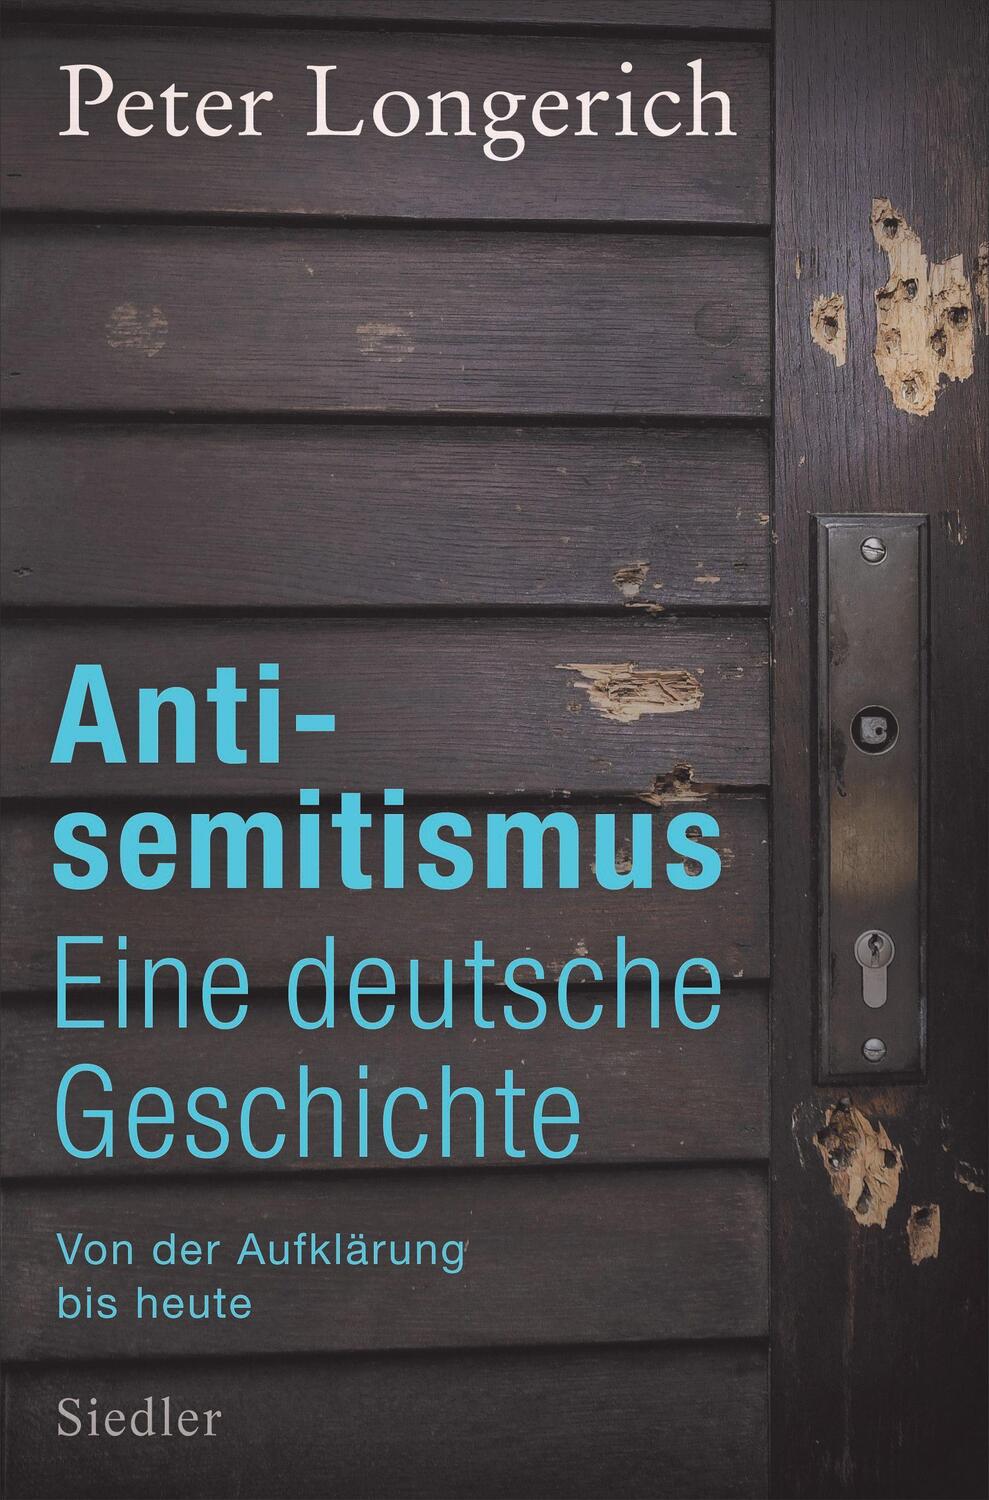 Antisemitismus: Eine deutsche Geschichte - Longerich, Peter